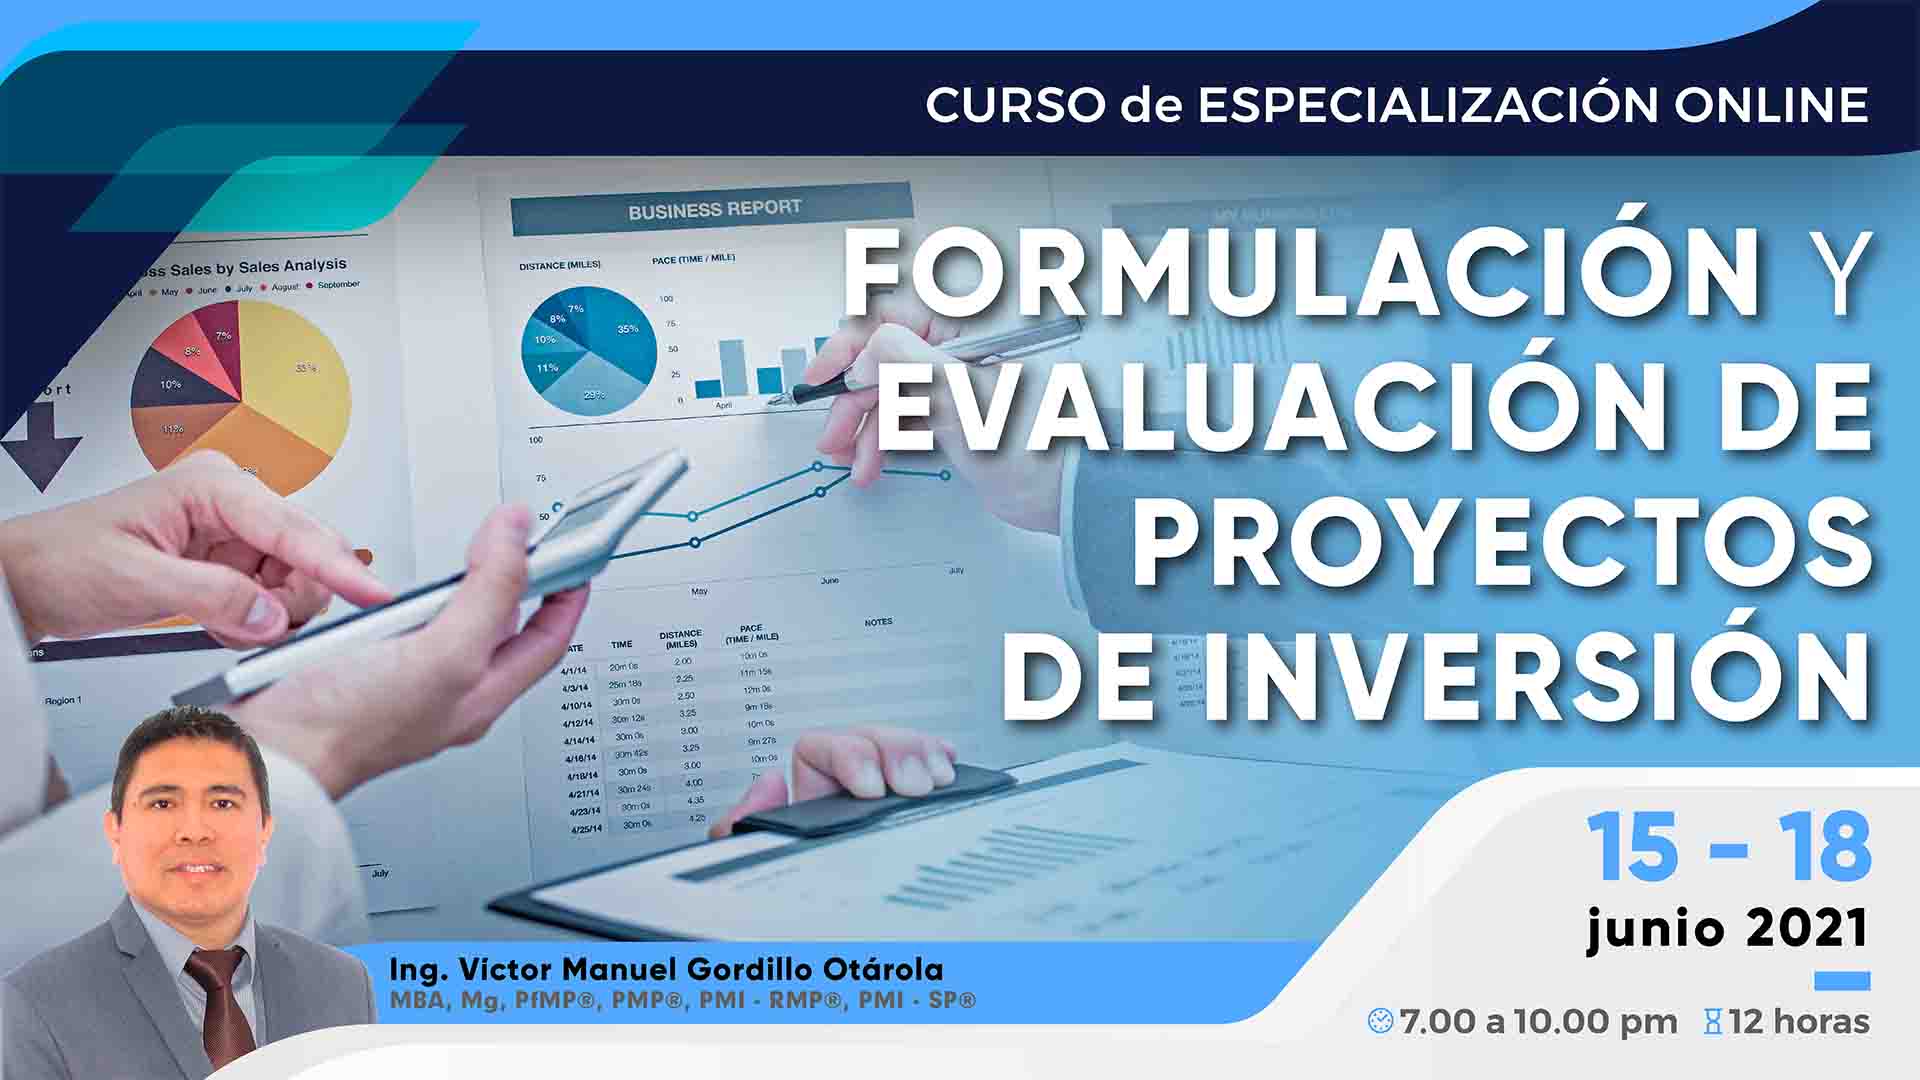 Formulación y Evaluación de Proyectos de Inversión